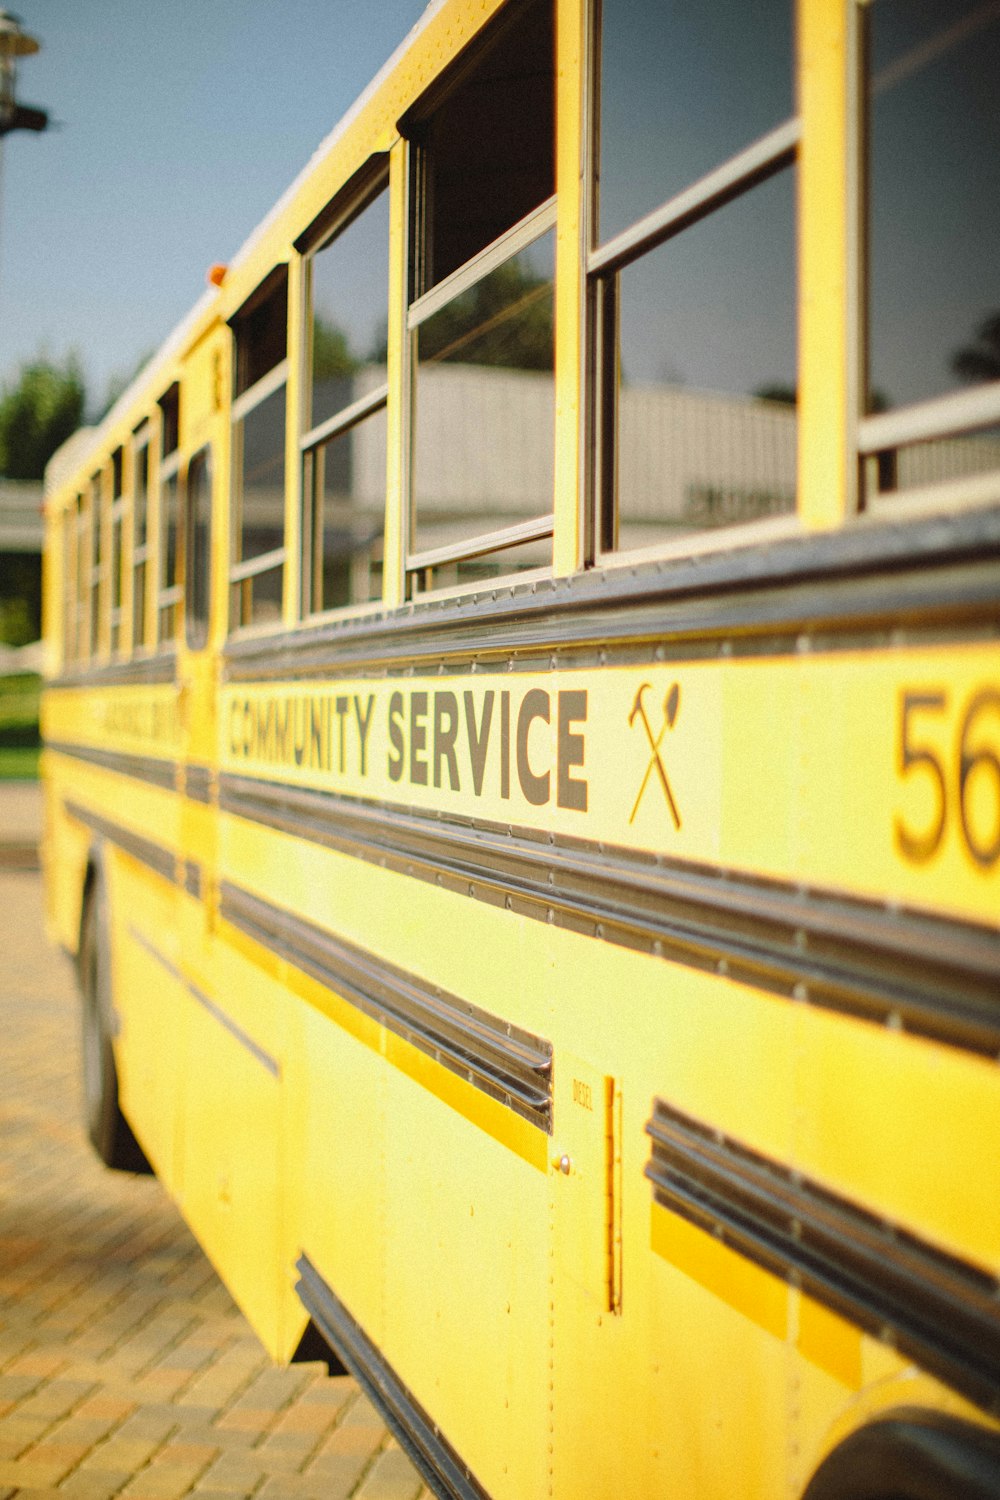 Autobús escolar amarillo